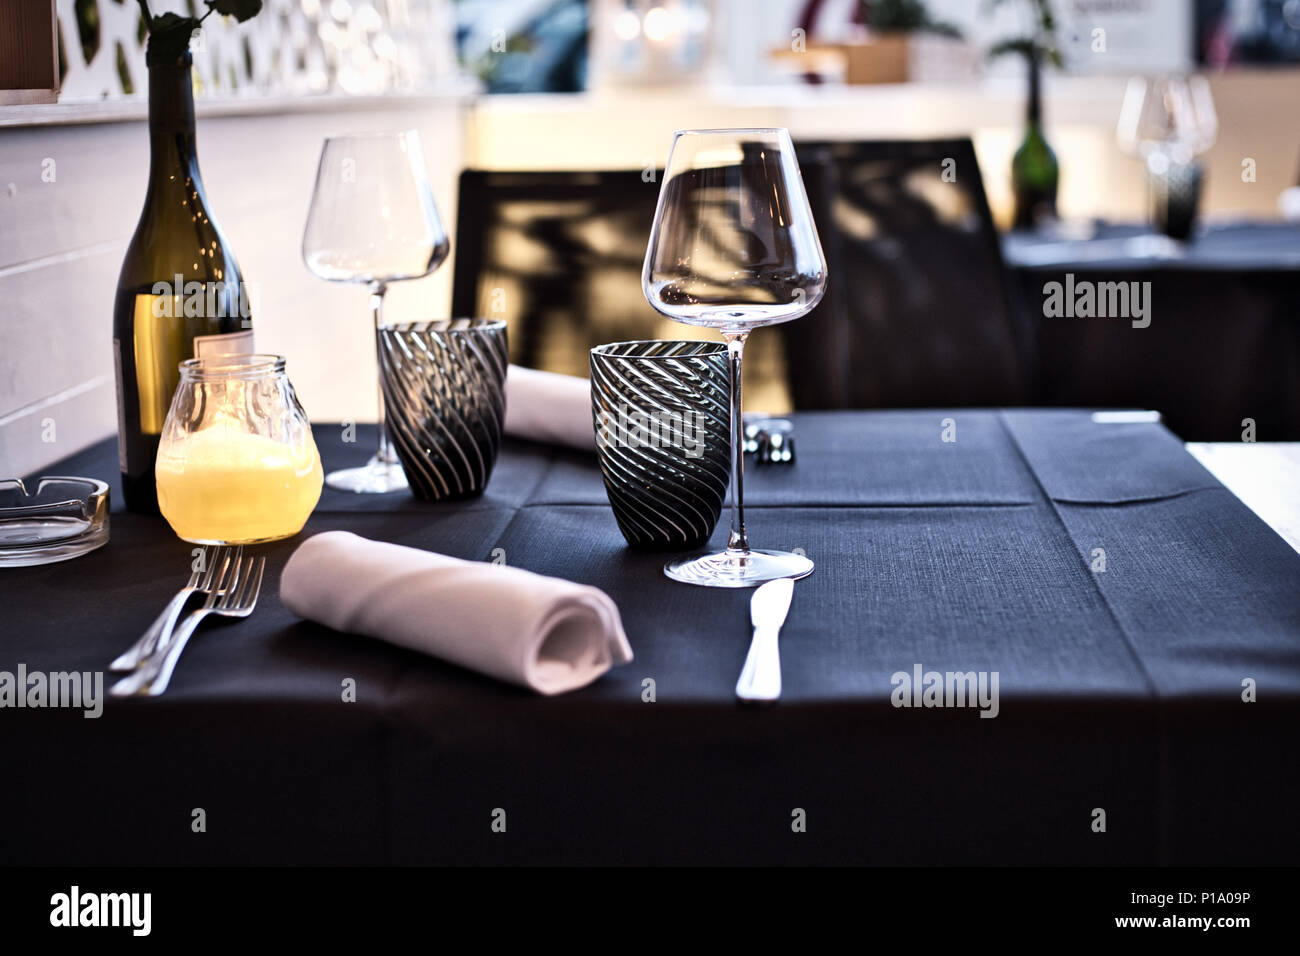 Élégant restaurant table avec nappe noir, blanc serviettes et gobelets en verre Banque D'Images